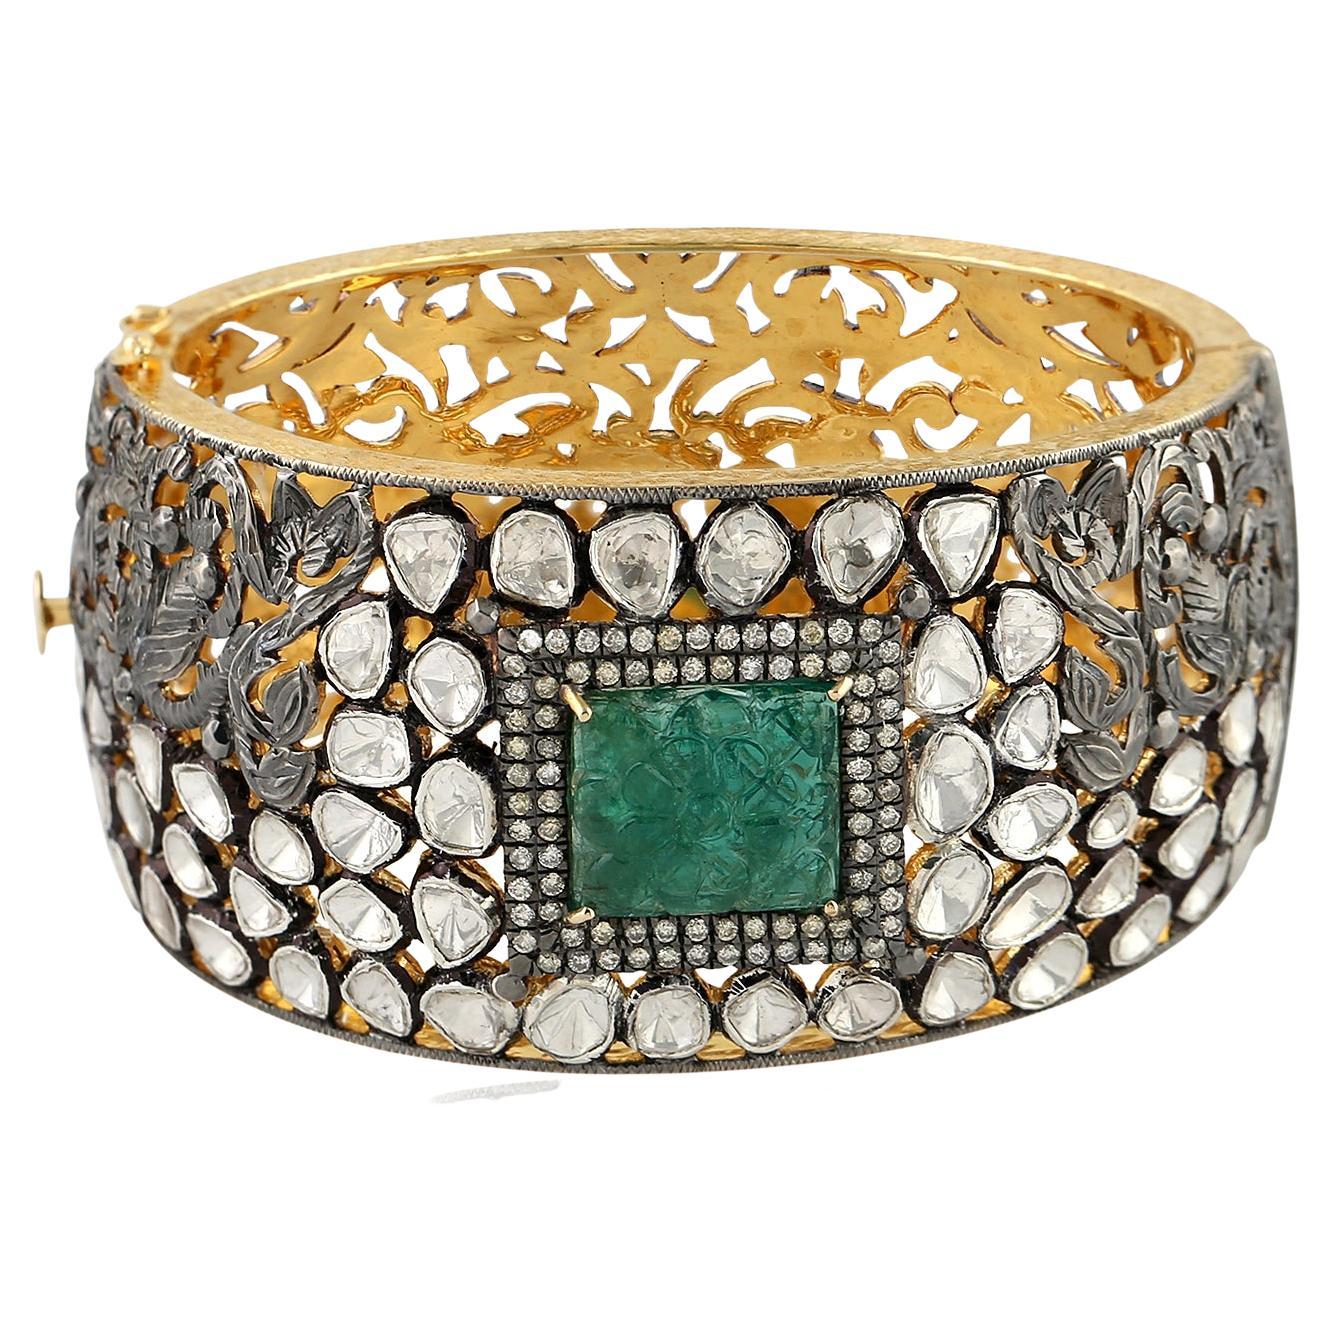 Carved Emerald & Rose Cut Diamond Cuff Bracelet In 18k Gold & Silver